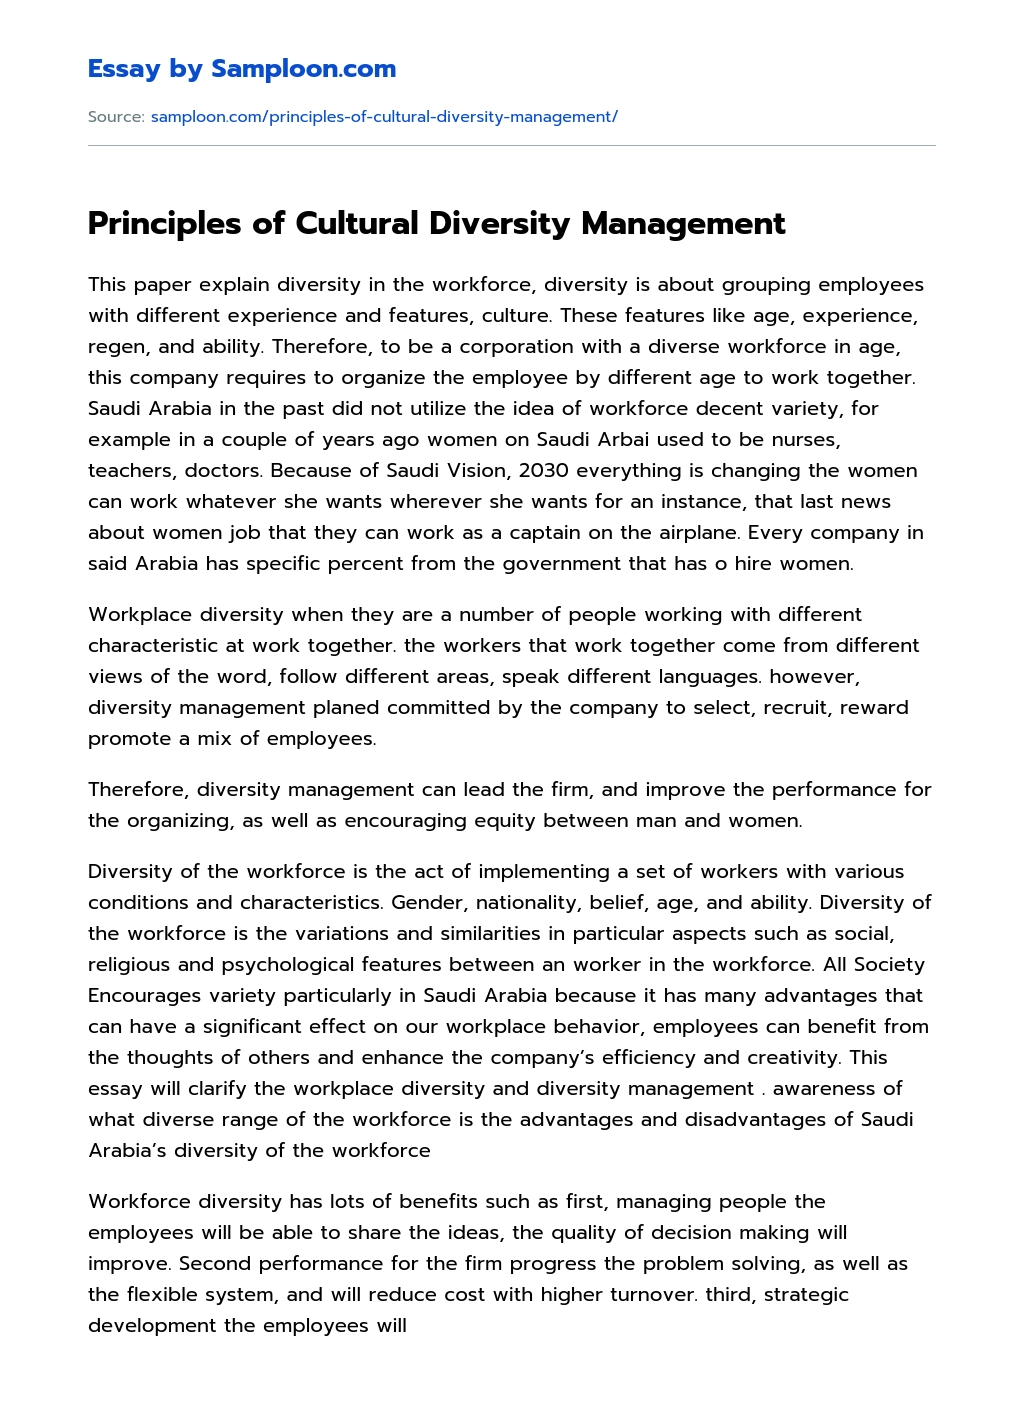 Principles of Cultural Diversity Management essay